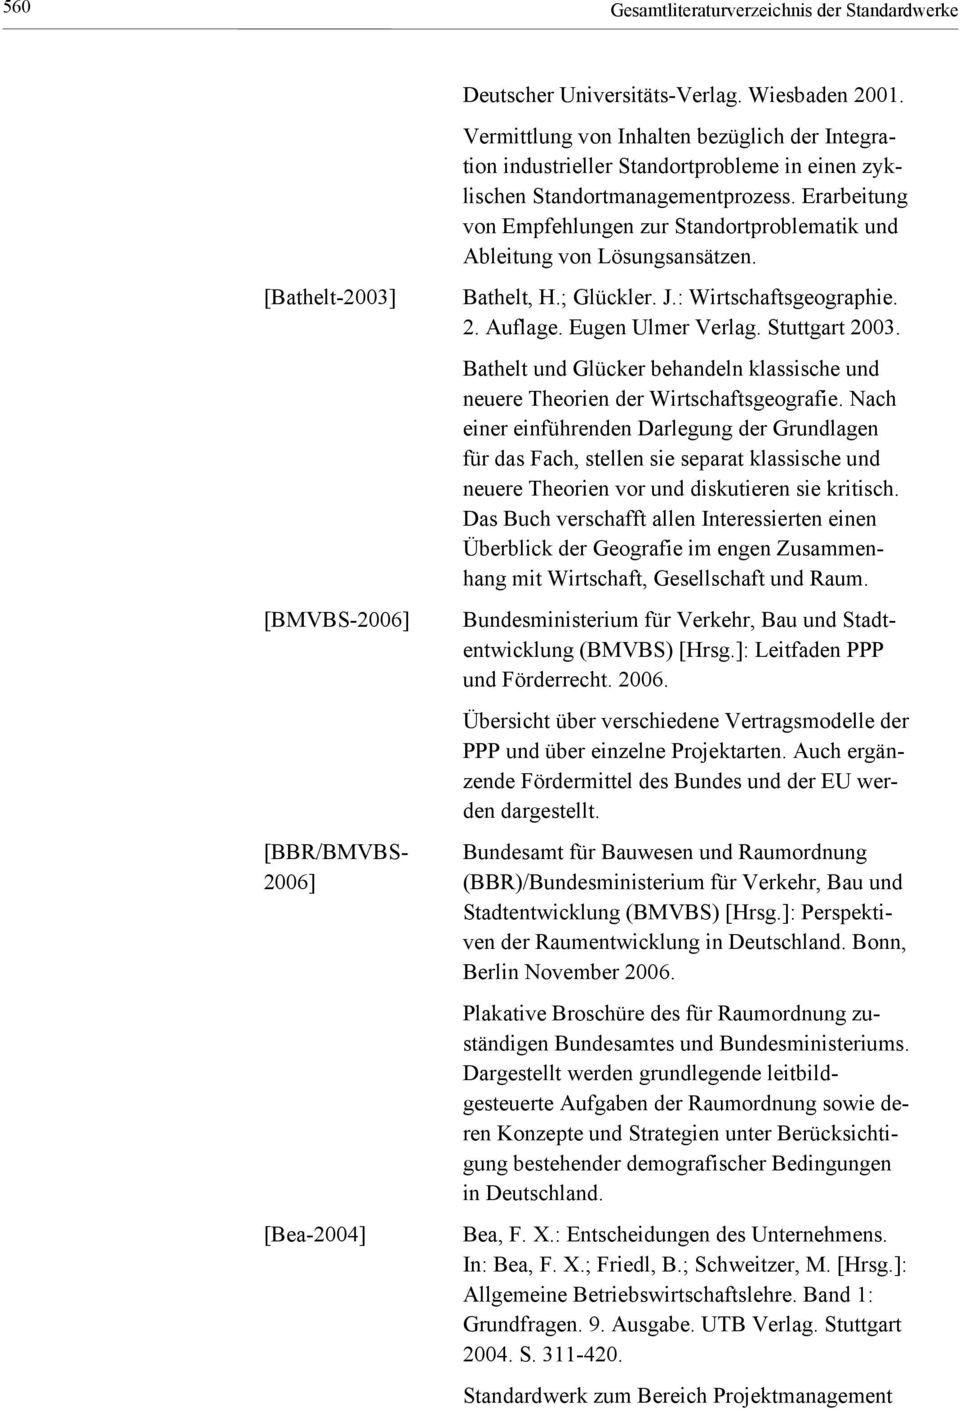 Erarbeitung von Empfehlungen zur Standortproblematik und Ableitung von Lösungsansätzen. [Bathelt-2003] [BMVBS-2006] [BBR/BMVBS- 2006] [Bea-2004] Bathelt, H.; Glückler. J.: Wirtschaftsgeographie. 2. Auflage.